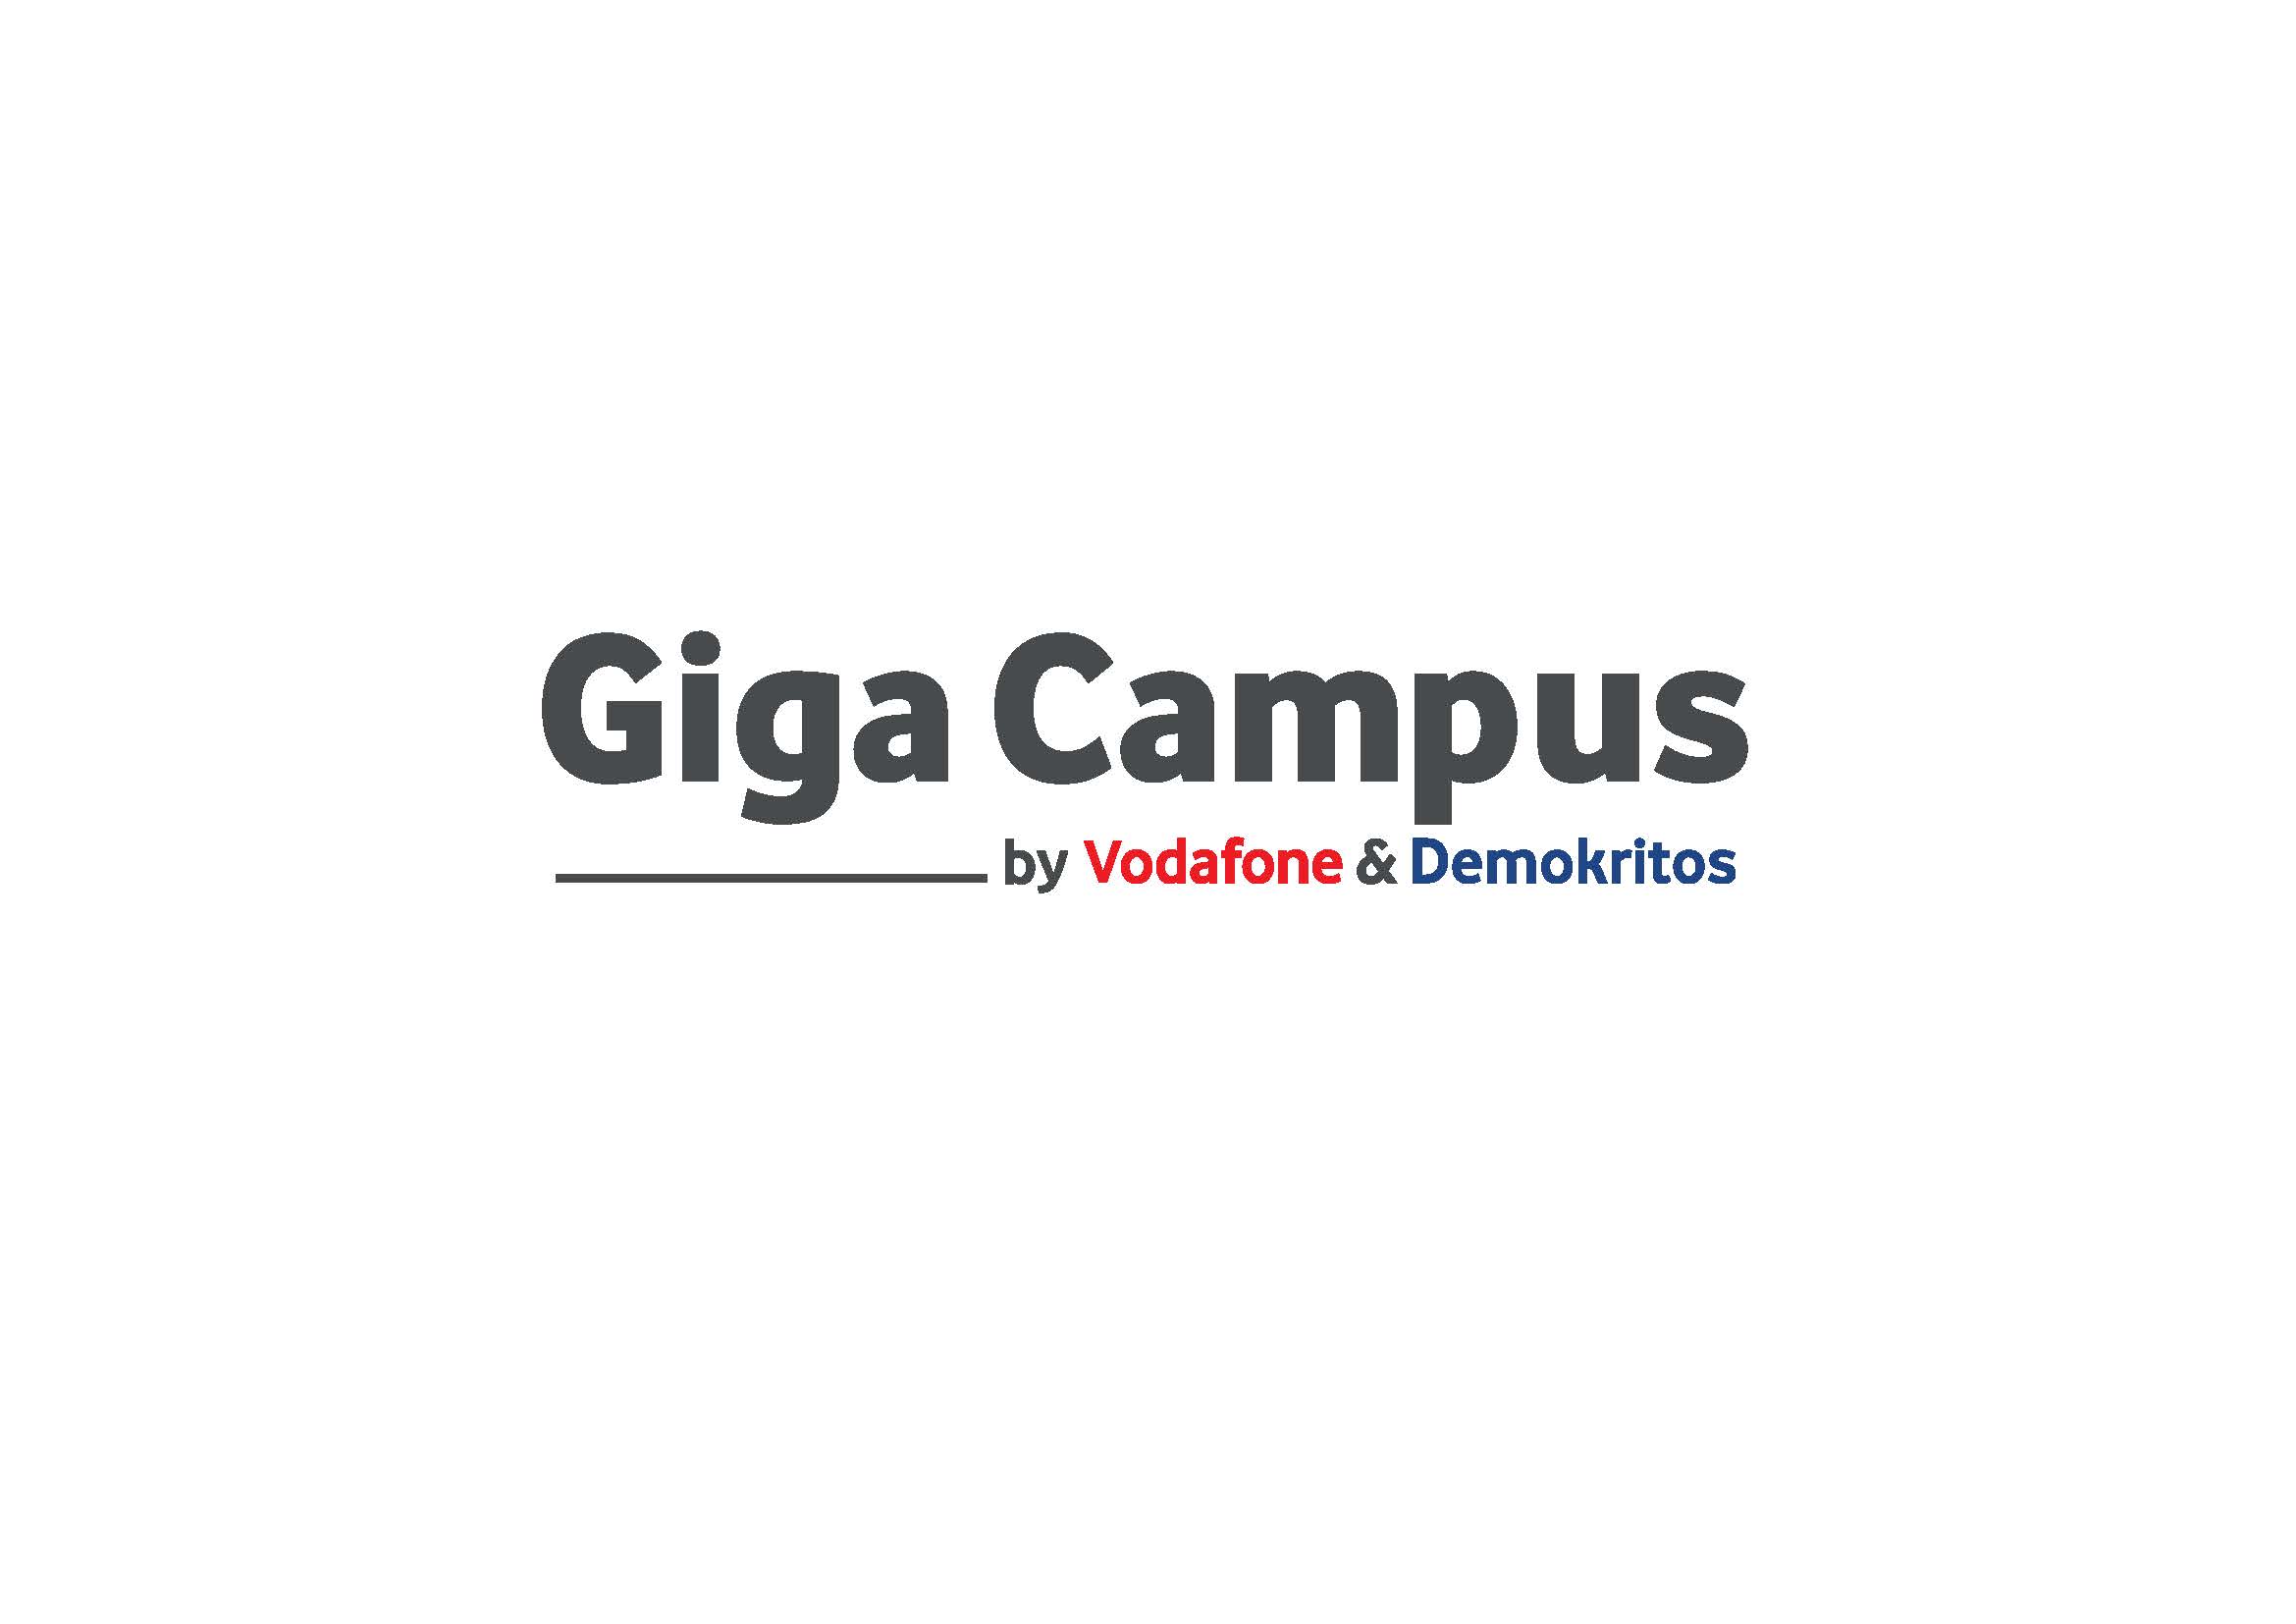 Ο Δημόκριτος και η Vodafone ενώνουν τις δυνάμεις τους για τη δημιουργία του Giga Campus